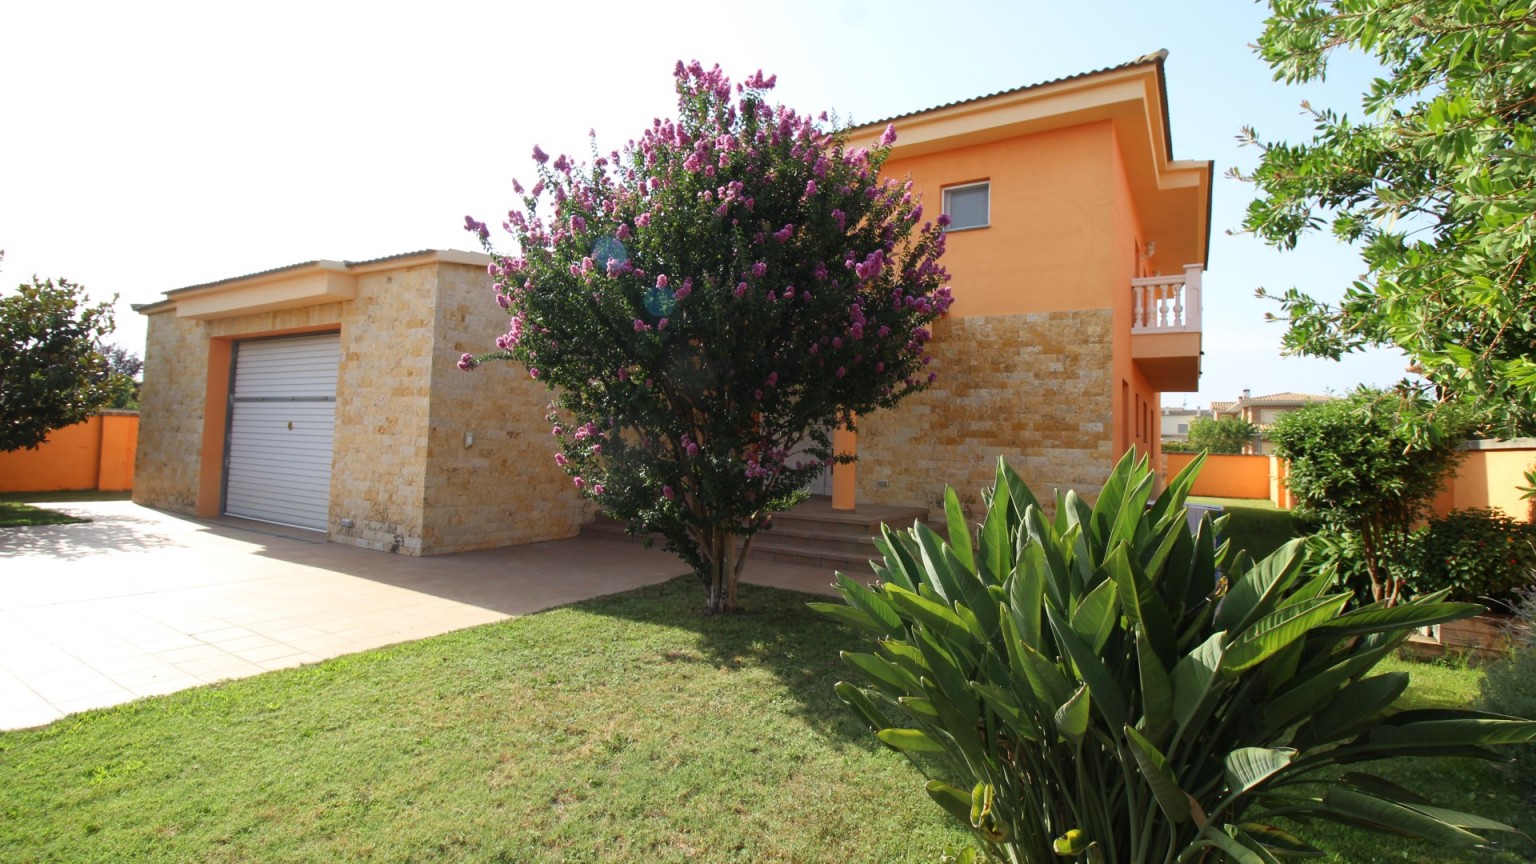 Maison isolée à Avinyonet de Puigventós, avec jardin et piscine.